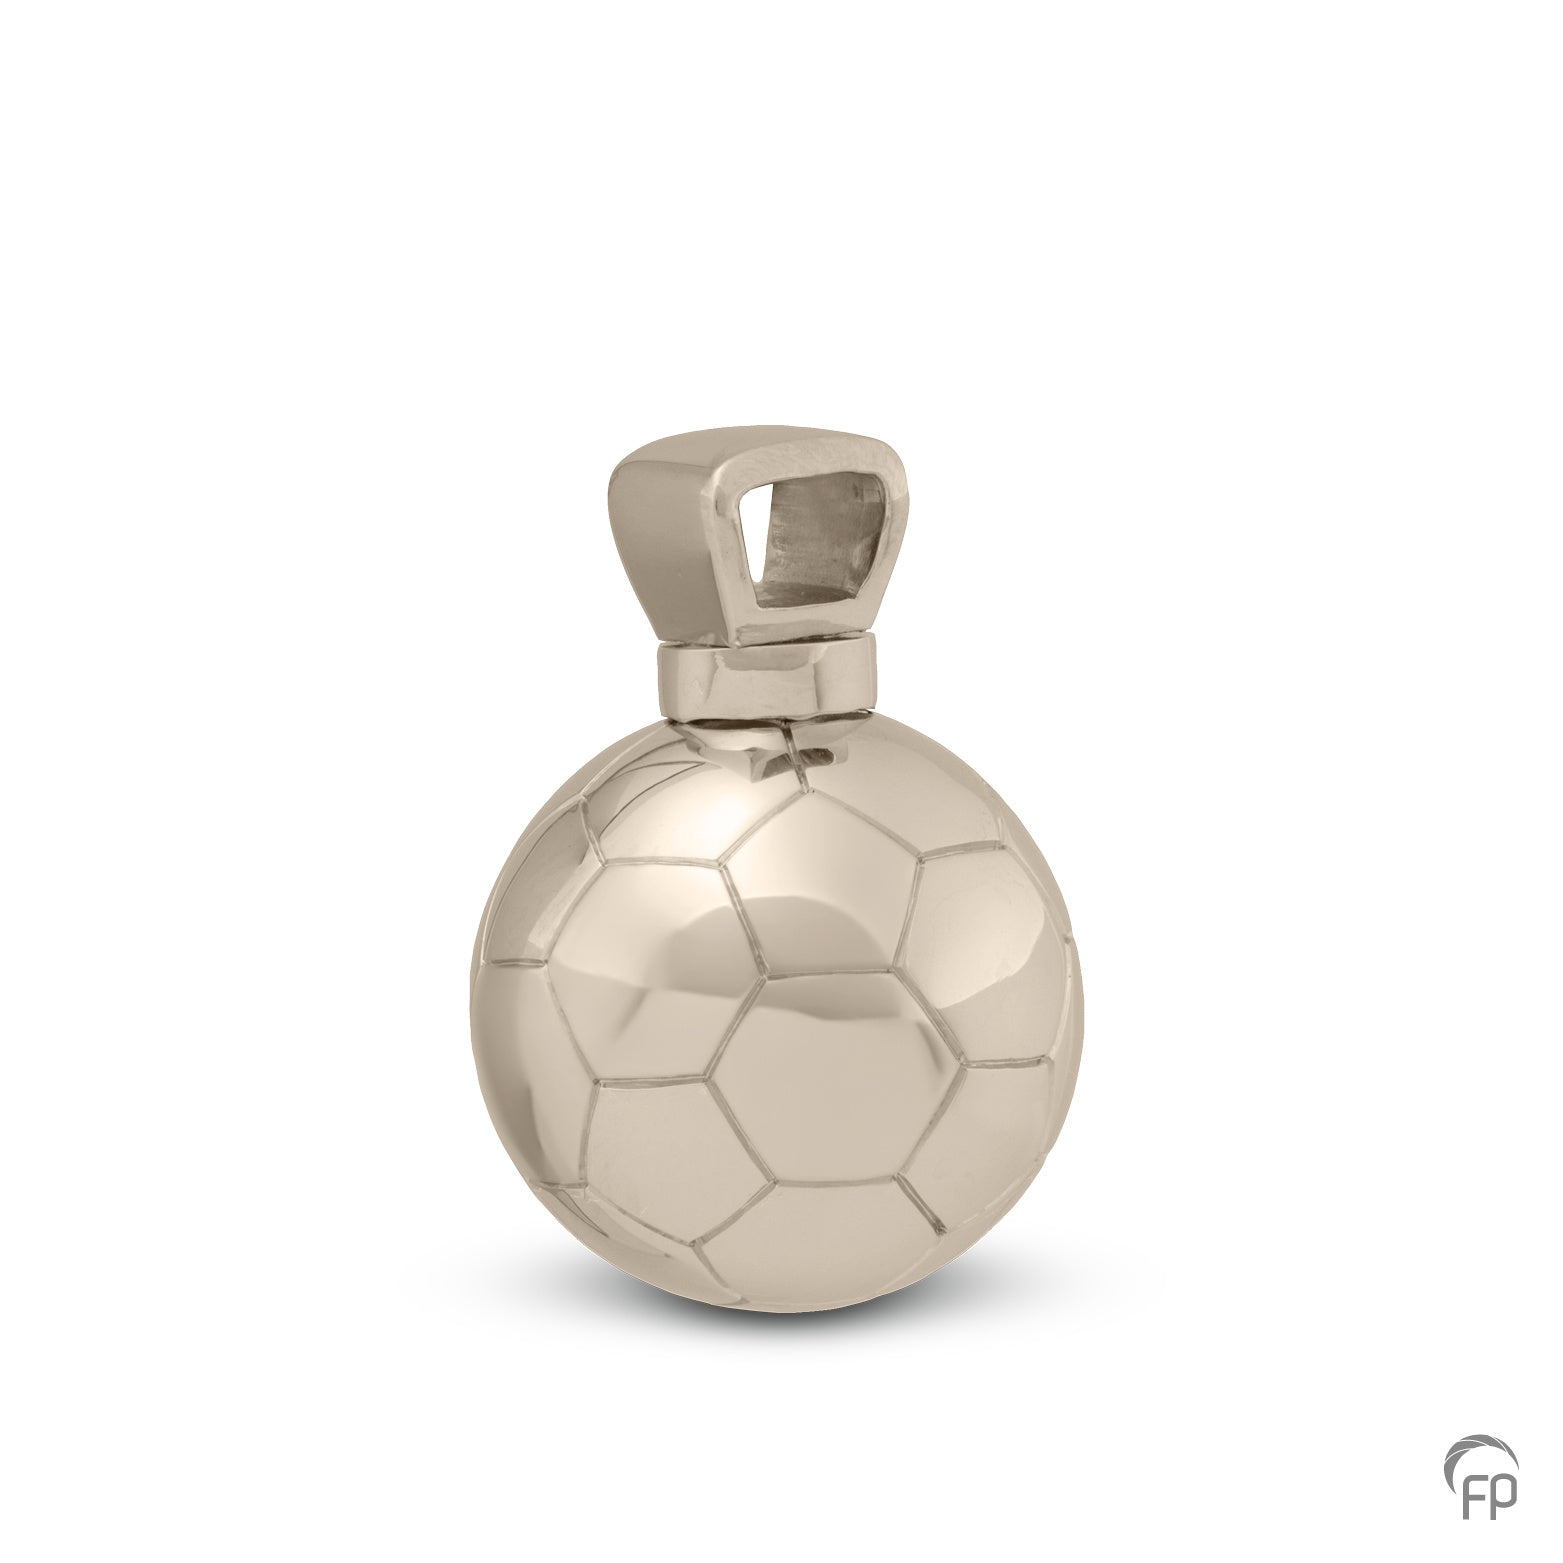 Voetbal ashanger uit deze sport collectie gedenksieraden is eenvoudig zelf te vullen en te bestellen in zilver, geelgoud en witgoud